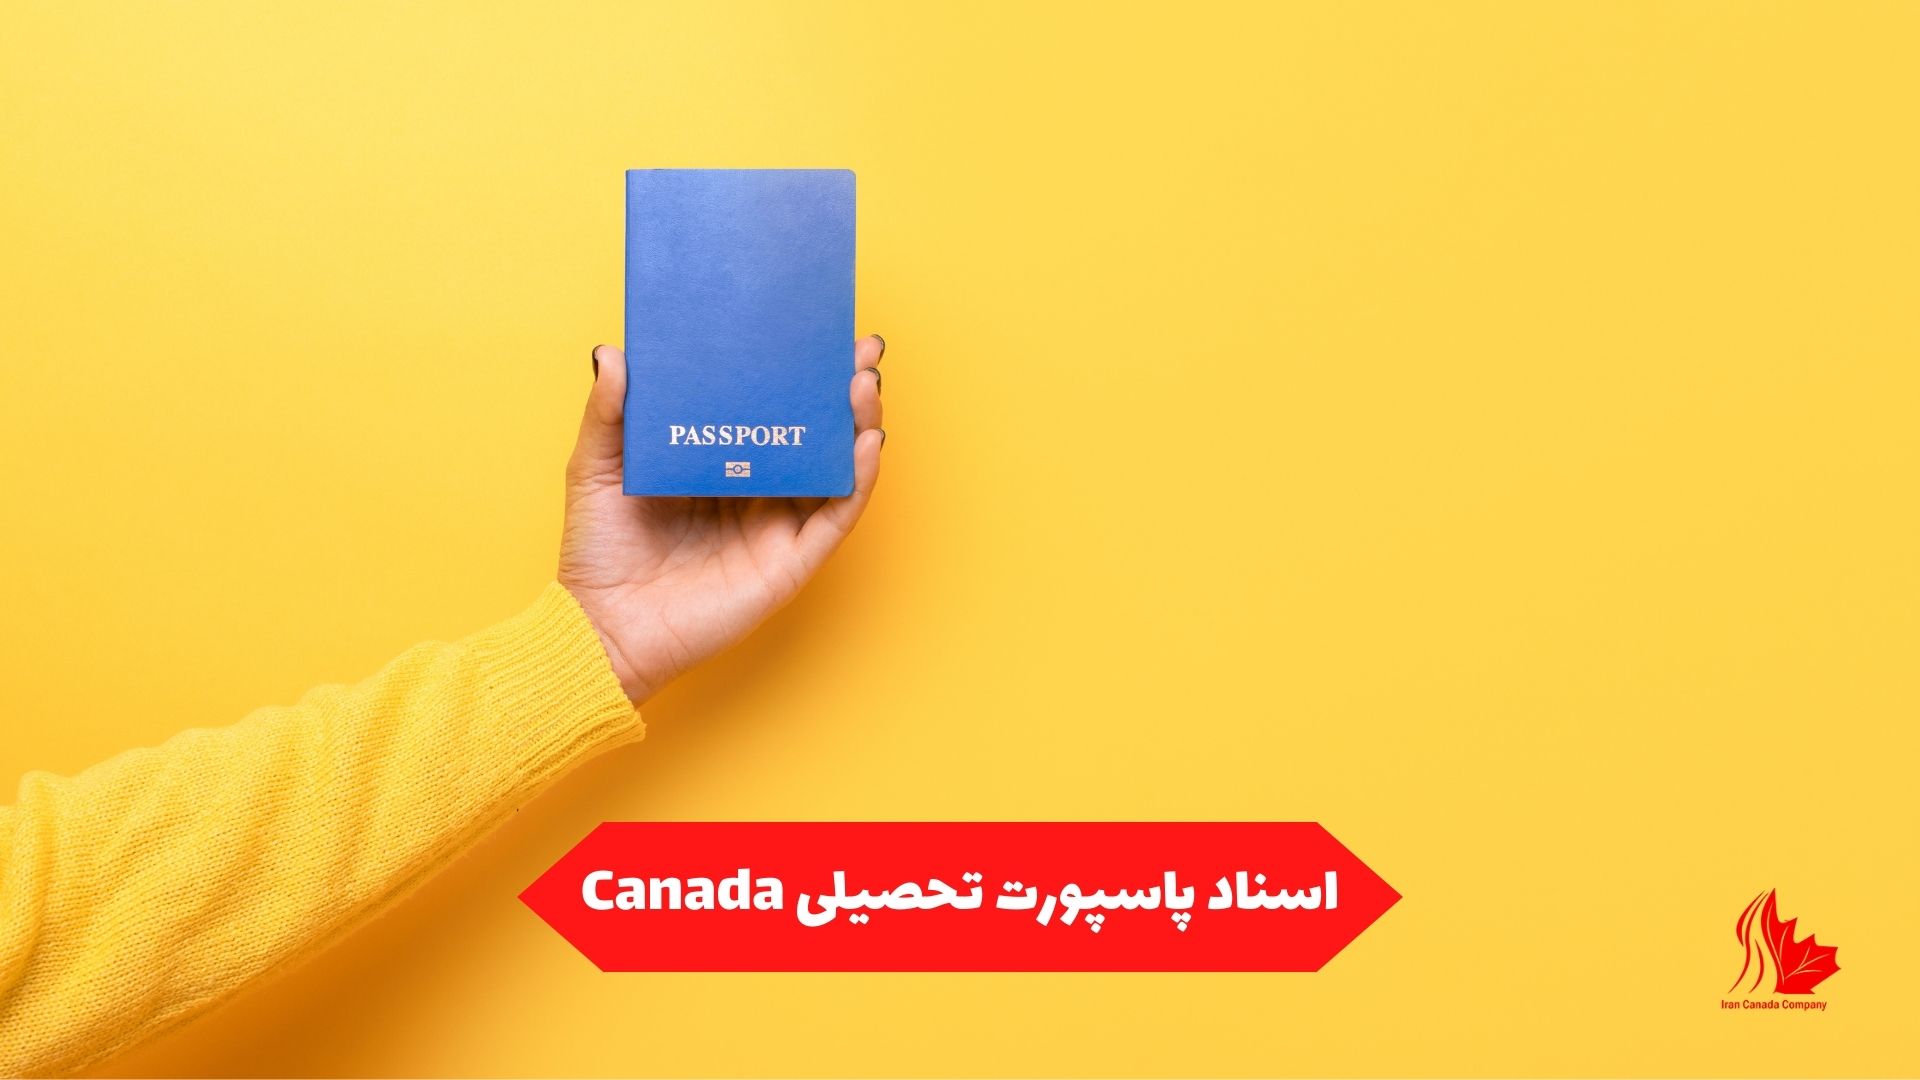 اسناد پاسپورت تحصیلی Canada